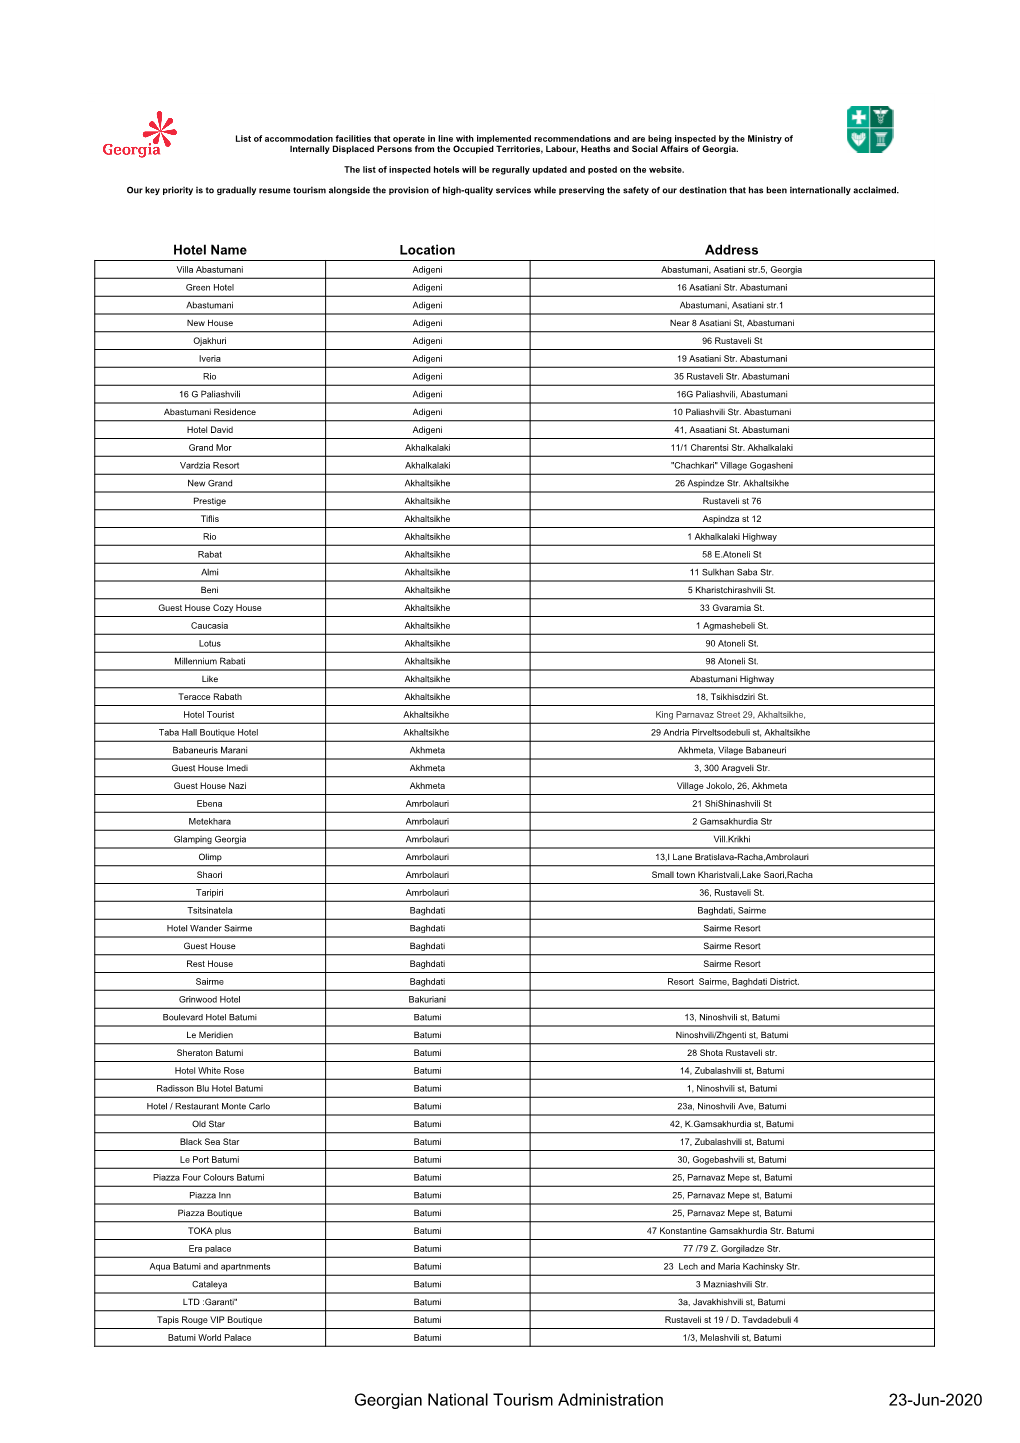 Full Hotel List (Website PDF)